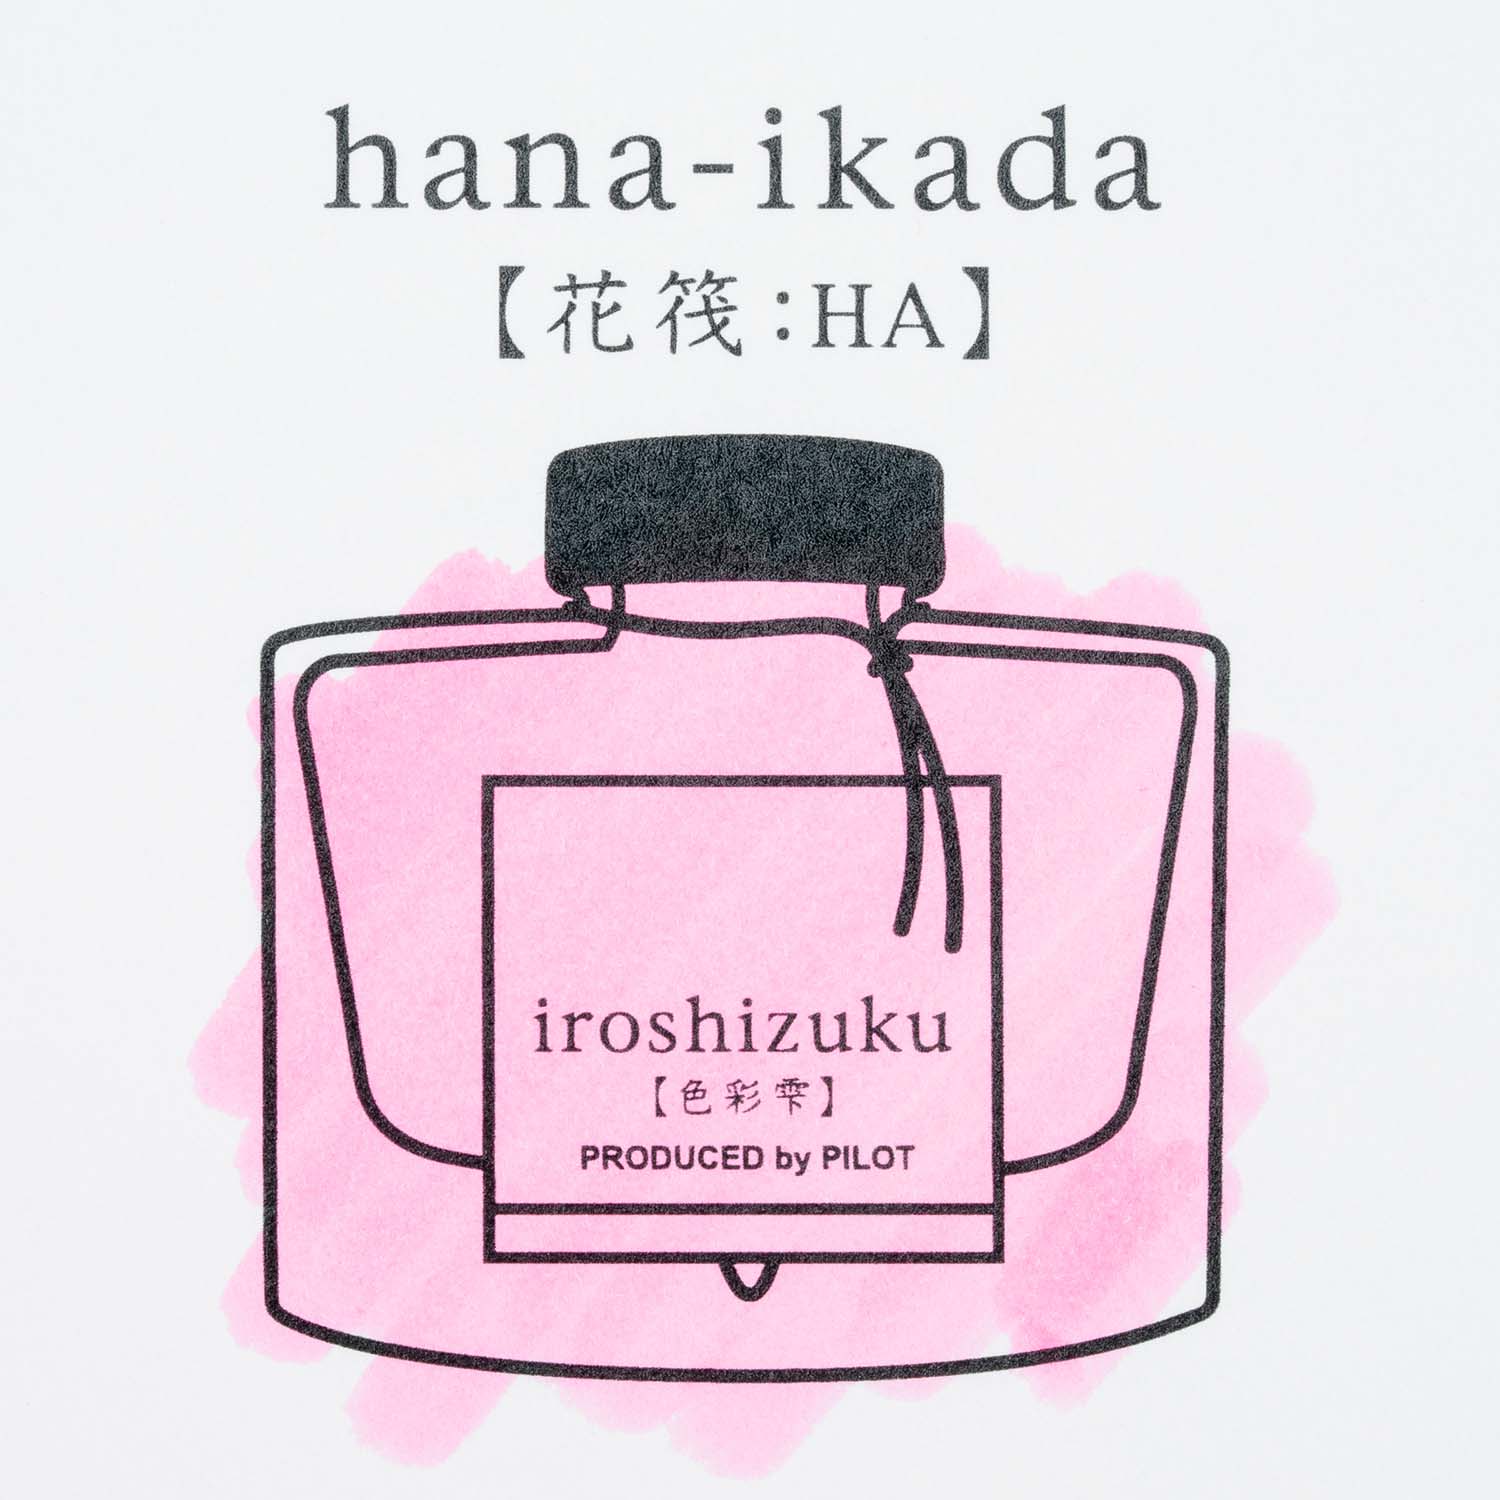 Pilot Iroshizuku Hana-ikada - 50ml Bottled Ink